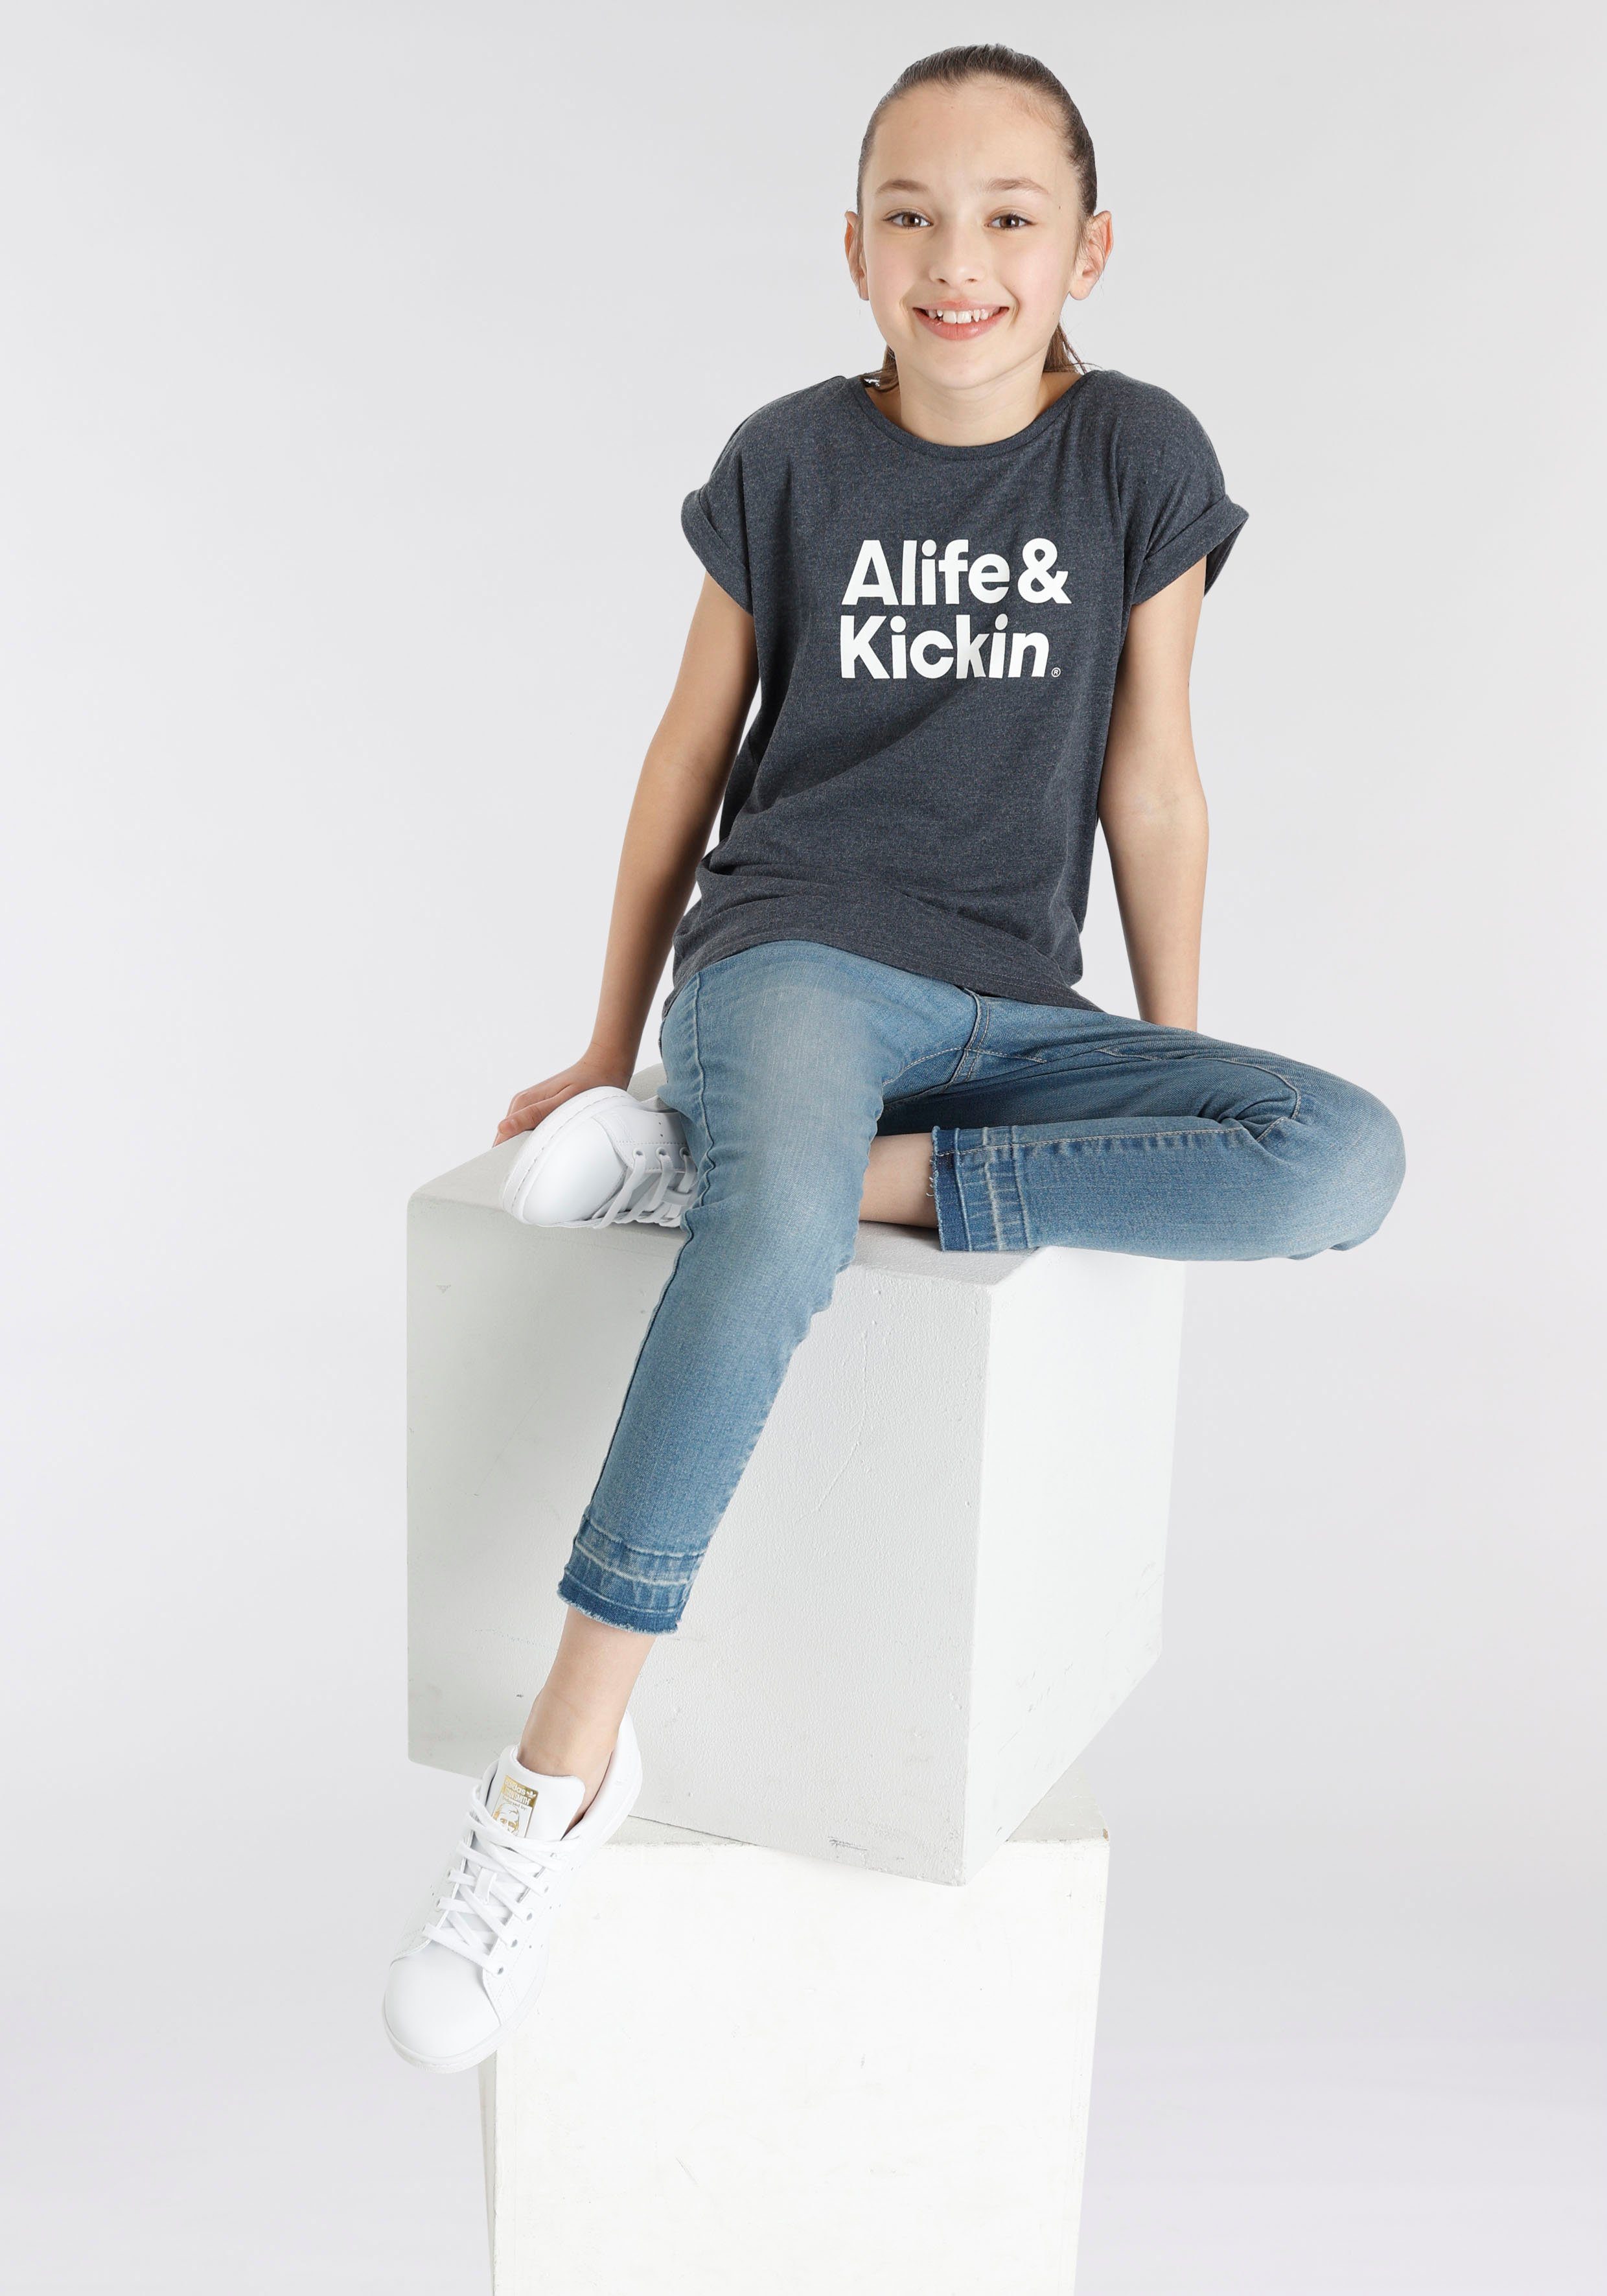 Kickin Logo für Kids. Alife & NEUE Kickin MARKE! Druck mit T-Shirt & Alife